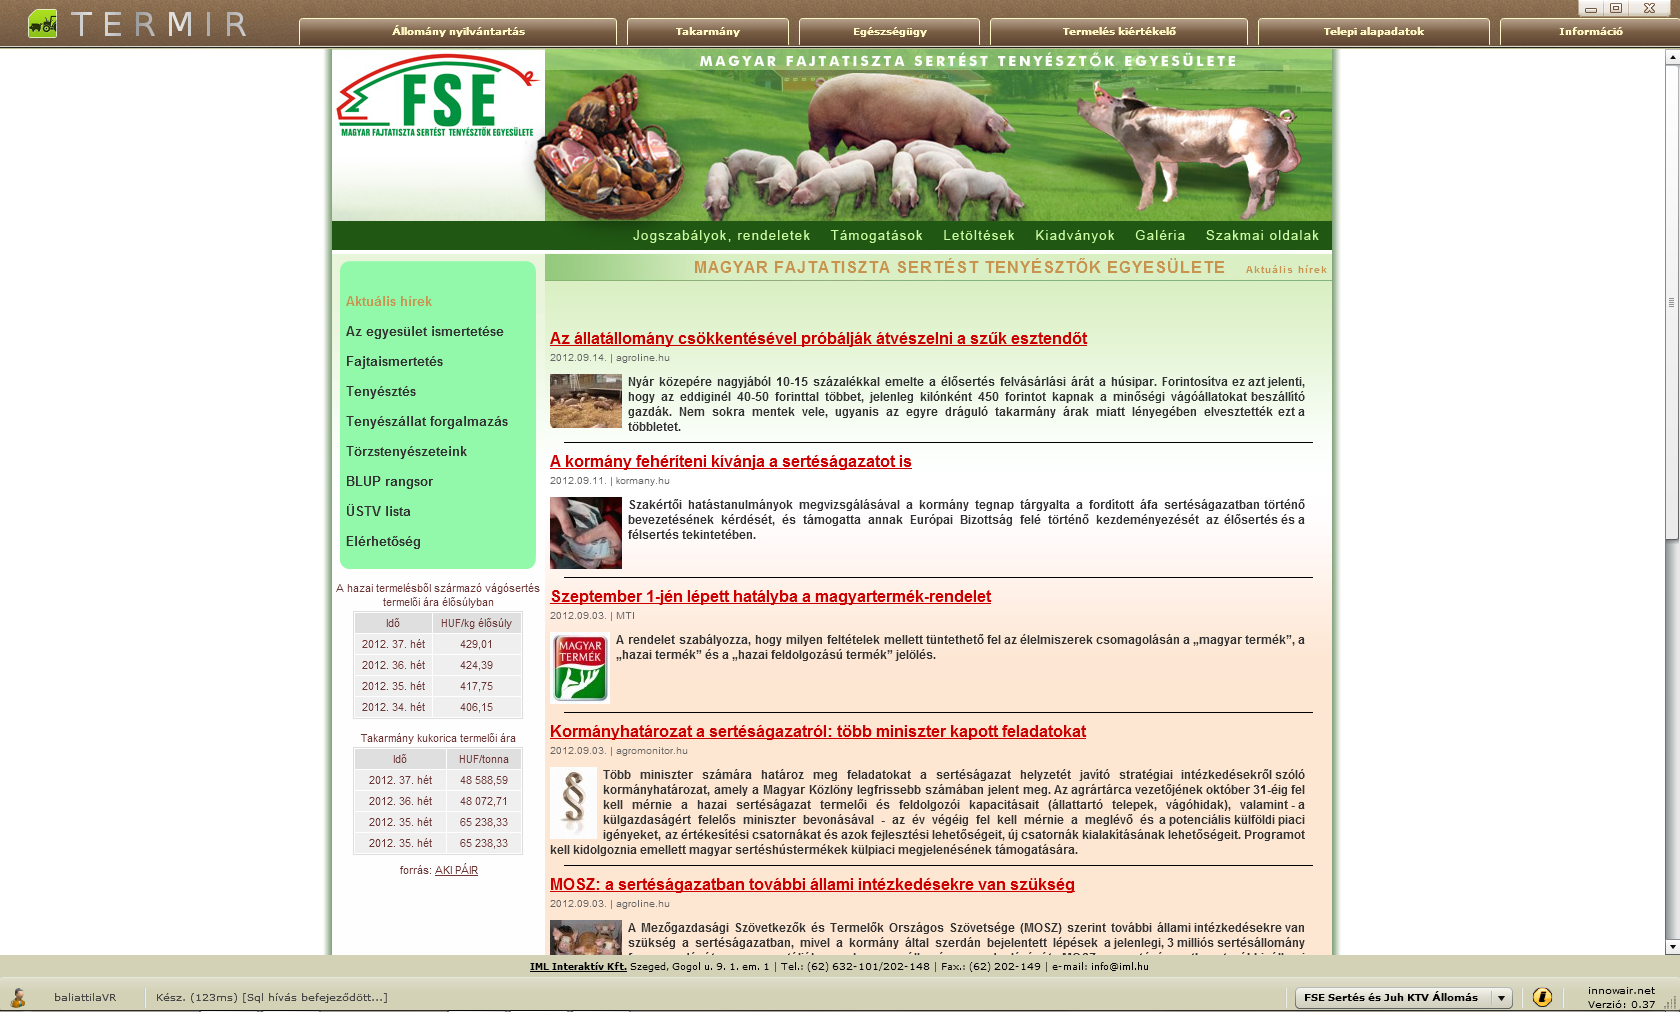 Kezdőoldal A program kezdőlapjának hátterében az FSE honlapra található.